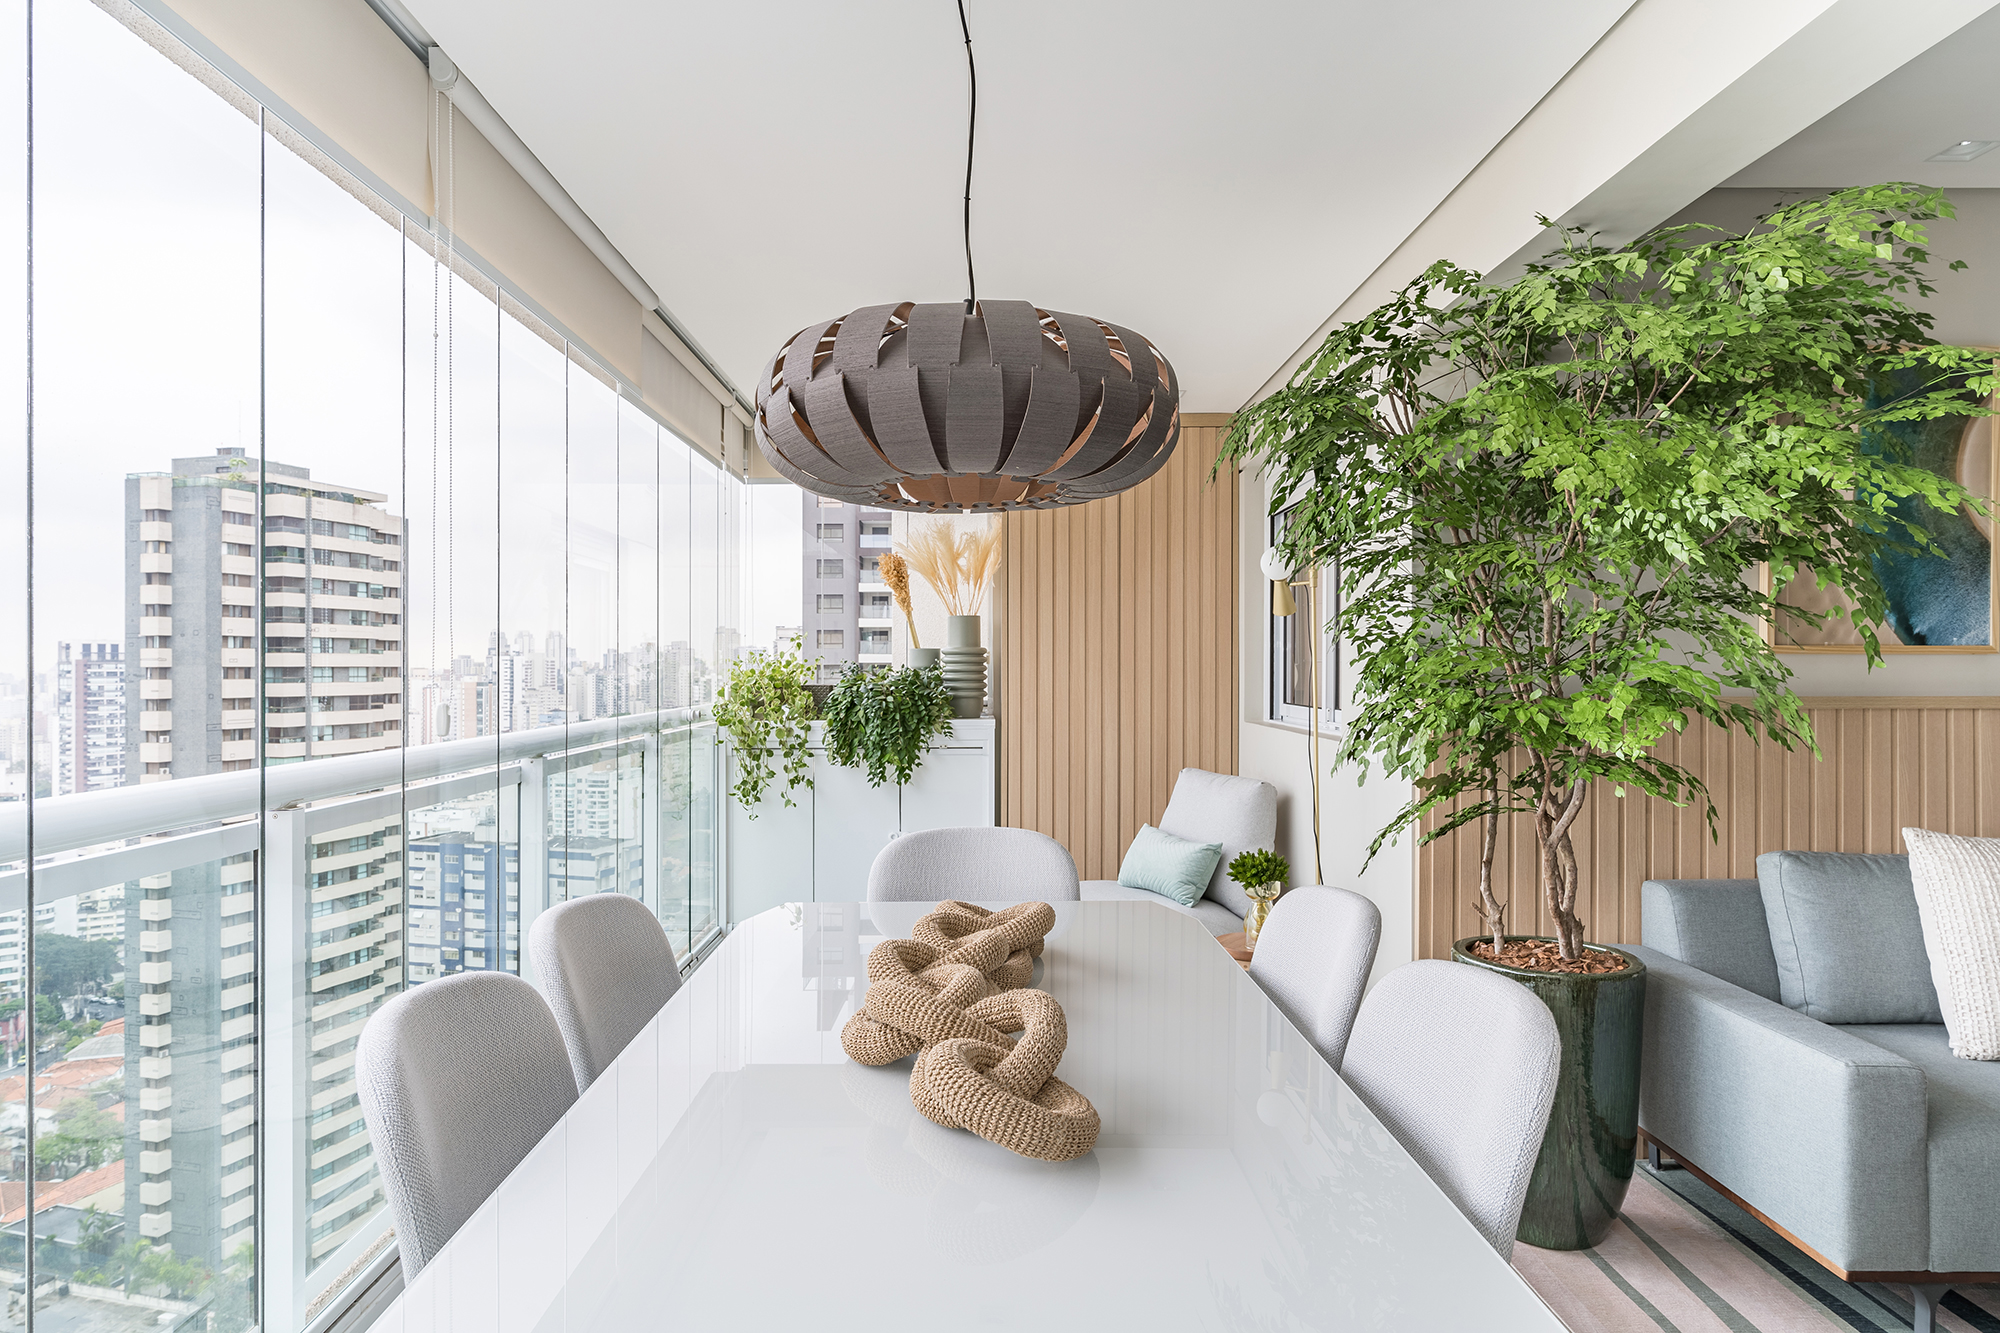 Apartamento de 60 m² ganha décor delicado repleto de madeira e plantas. Projeto de Bia Hajnal. Na foto, varanda com cantinho de leitura e plantas.